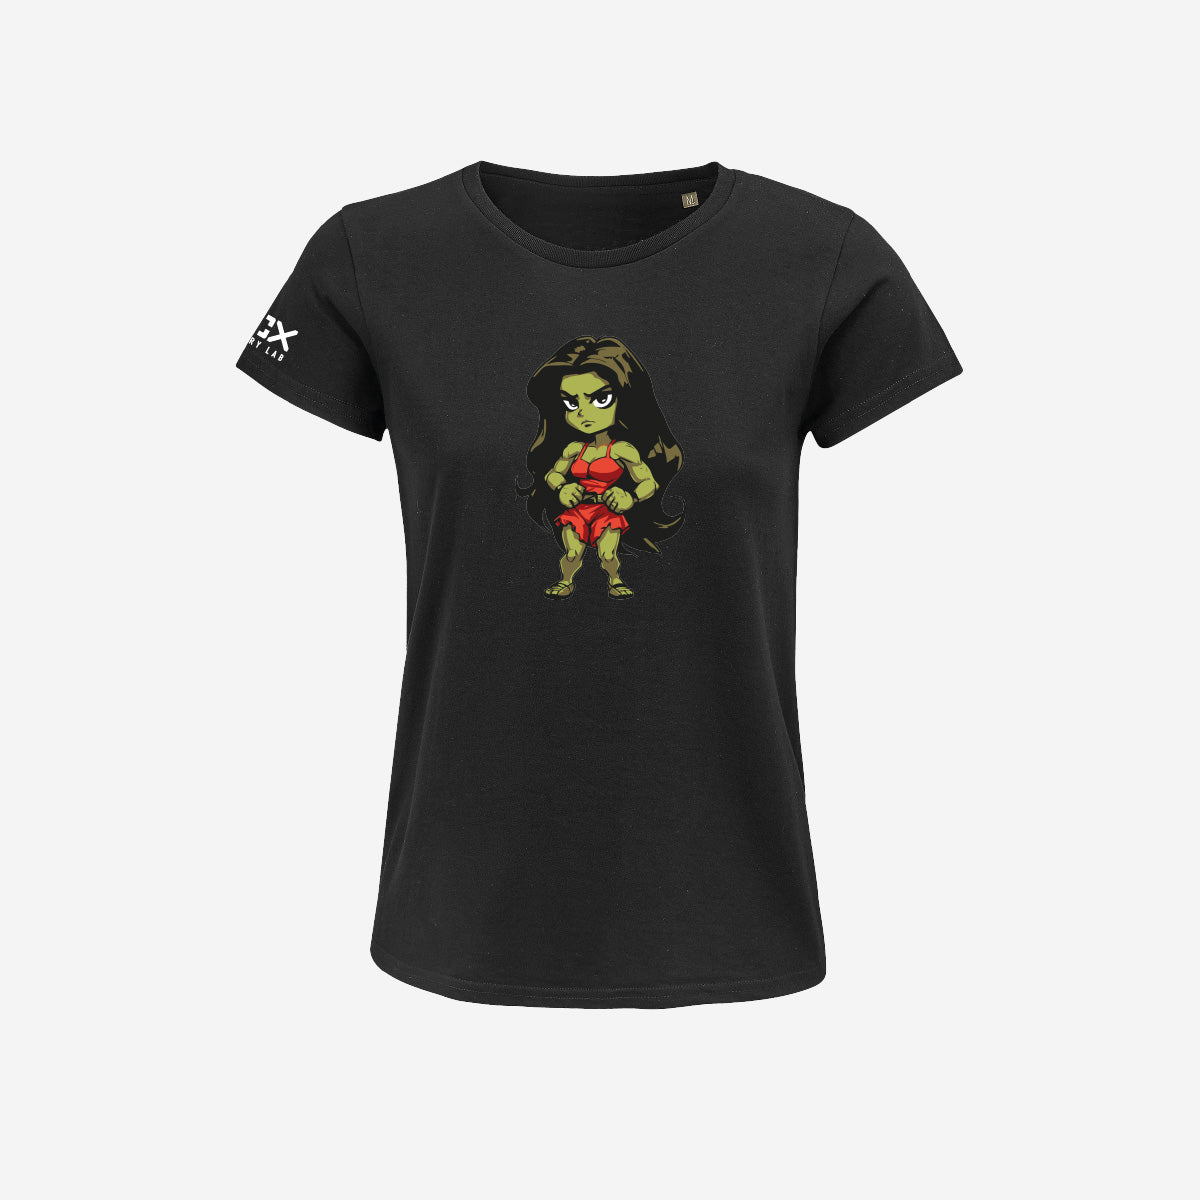 T-shirt Donna - She Hulk